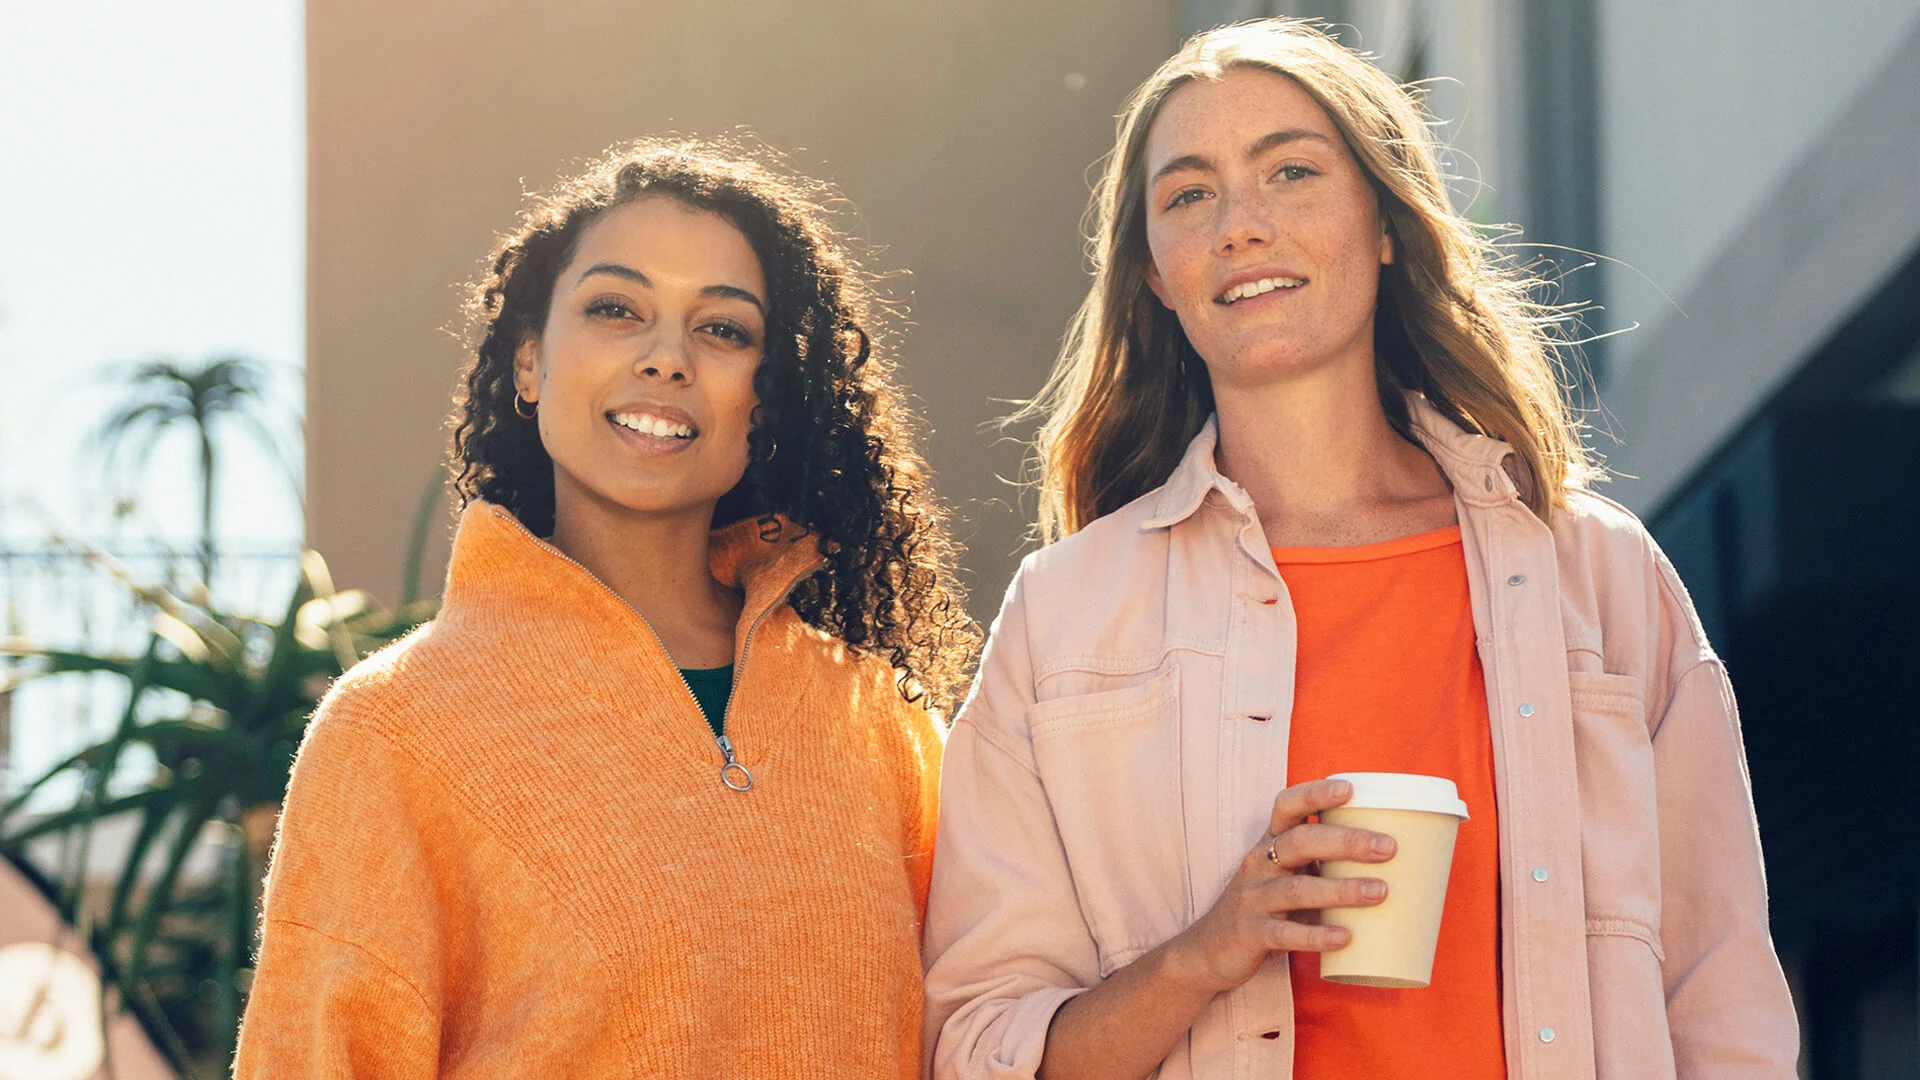 Två kvinnor tittar in i kameran och ler, den ena håller i en take away-kaffe.